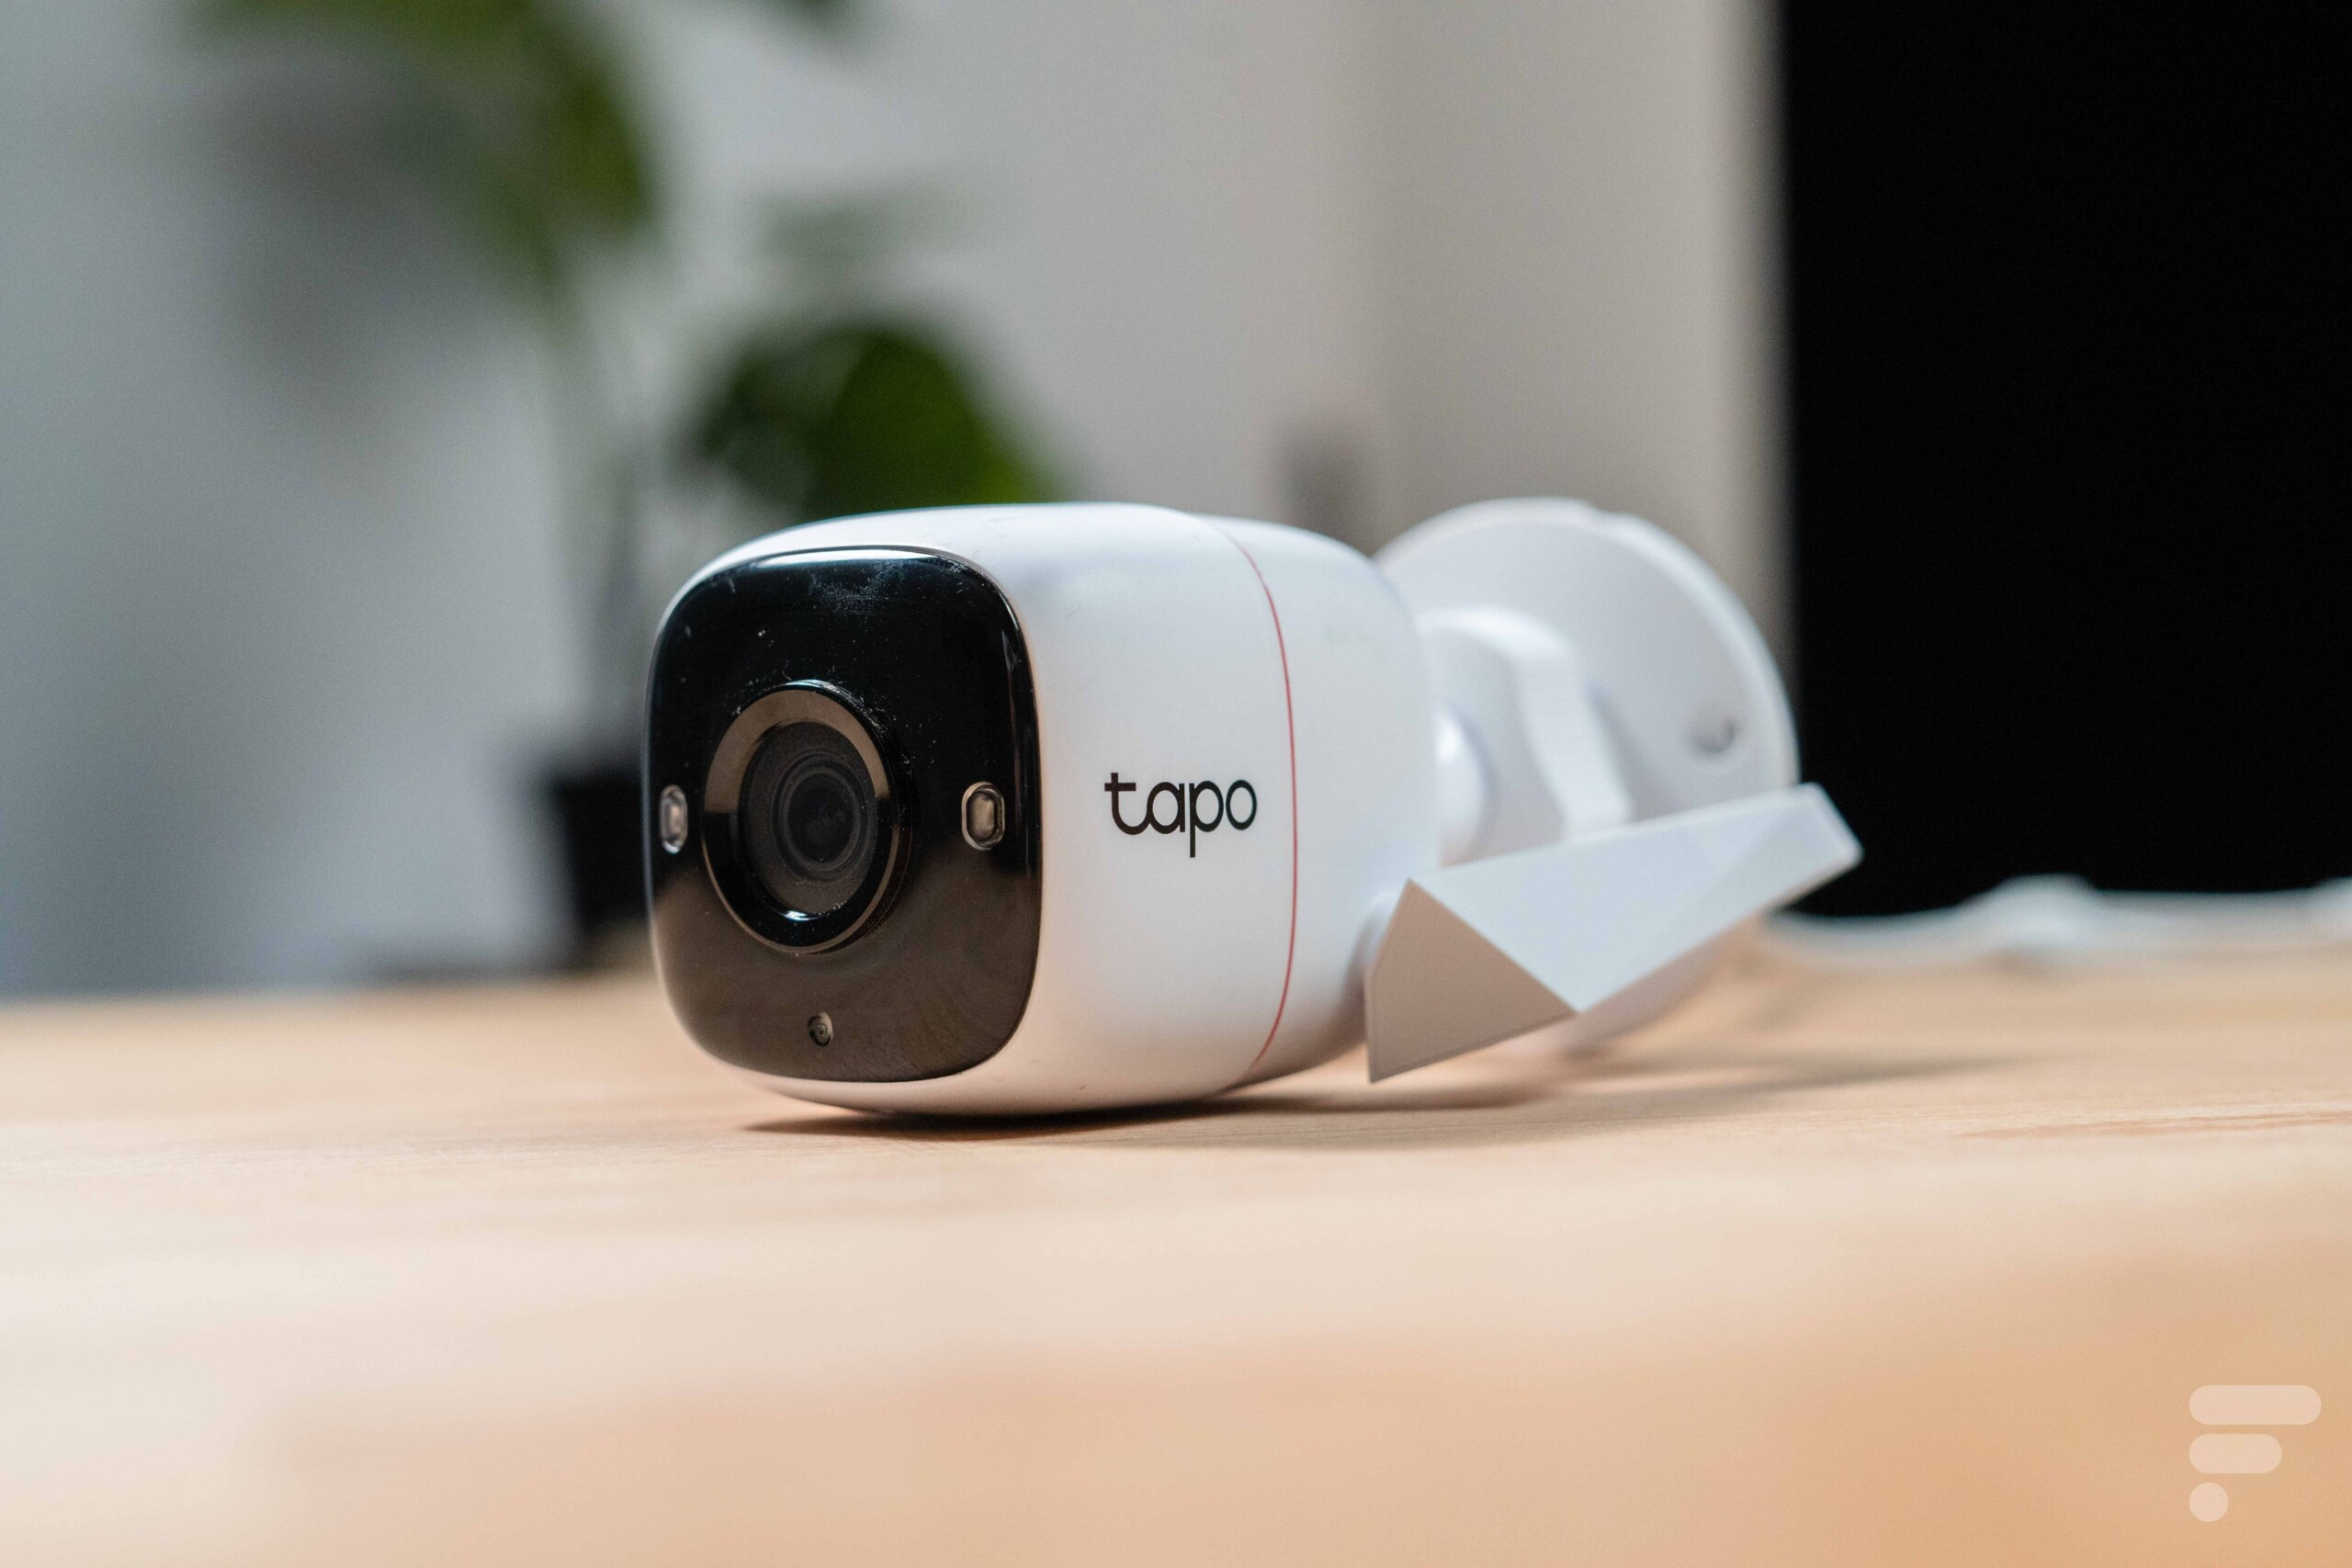 Tapo C200 : nous avons testé la caméra de surveillance WiFi Tp